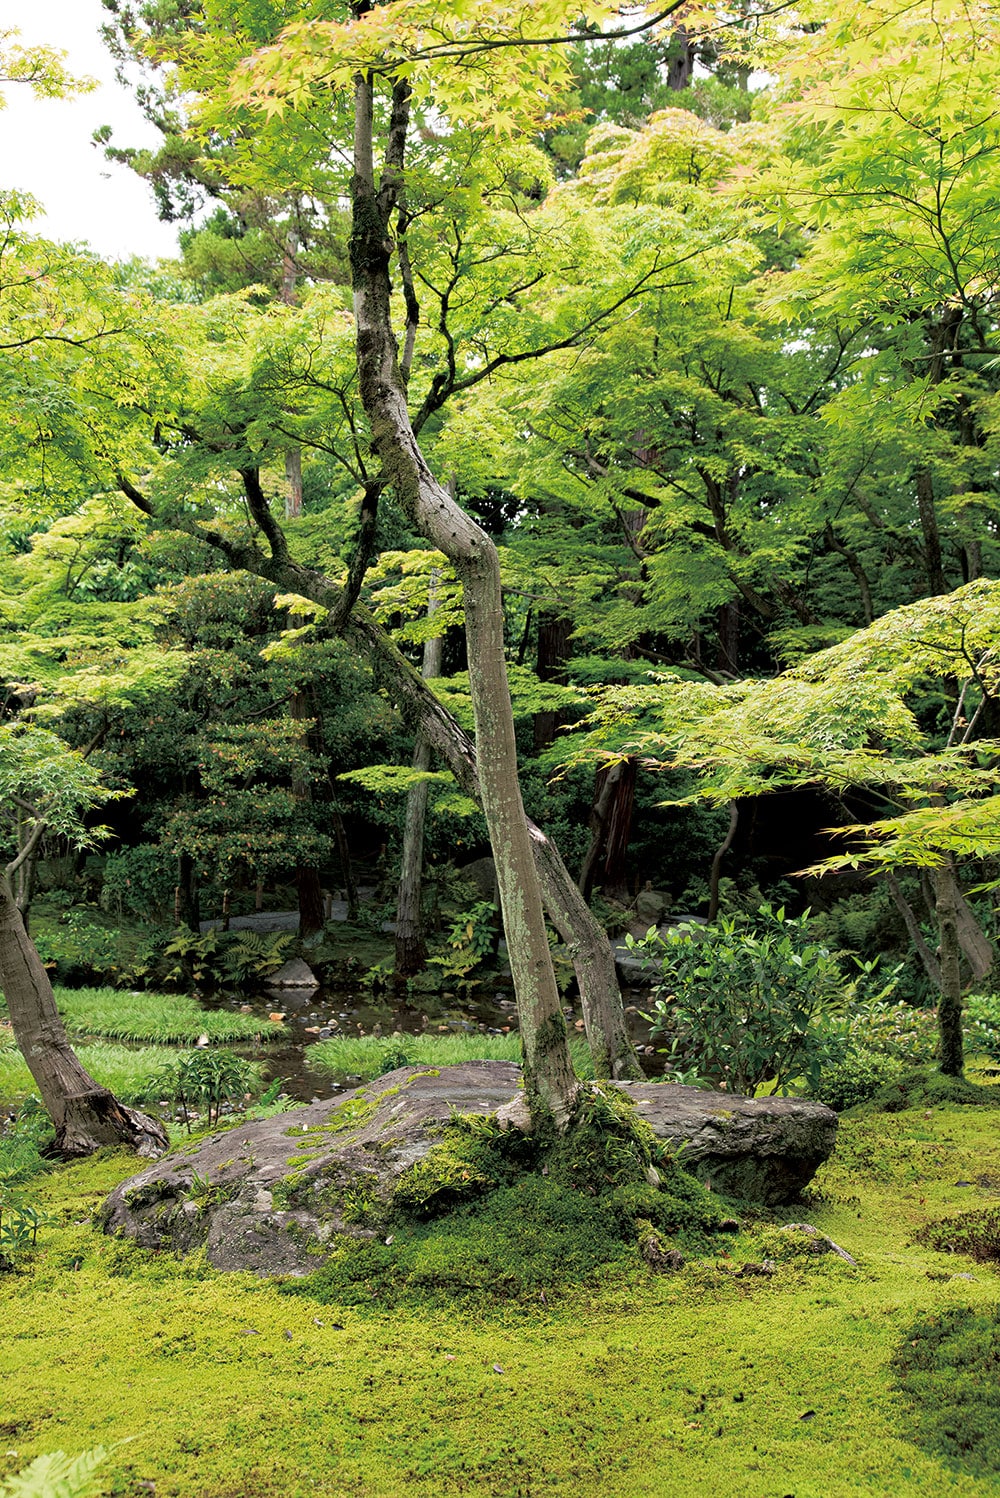 平尾氏は野趣溢れながらも繊細さを感じる樹木がこの庭には多いと話す。